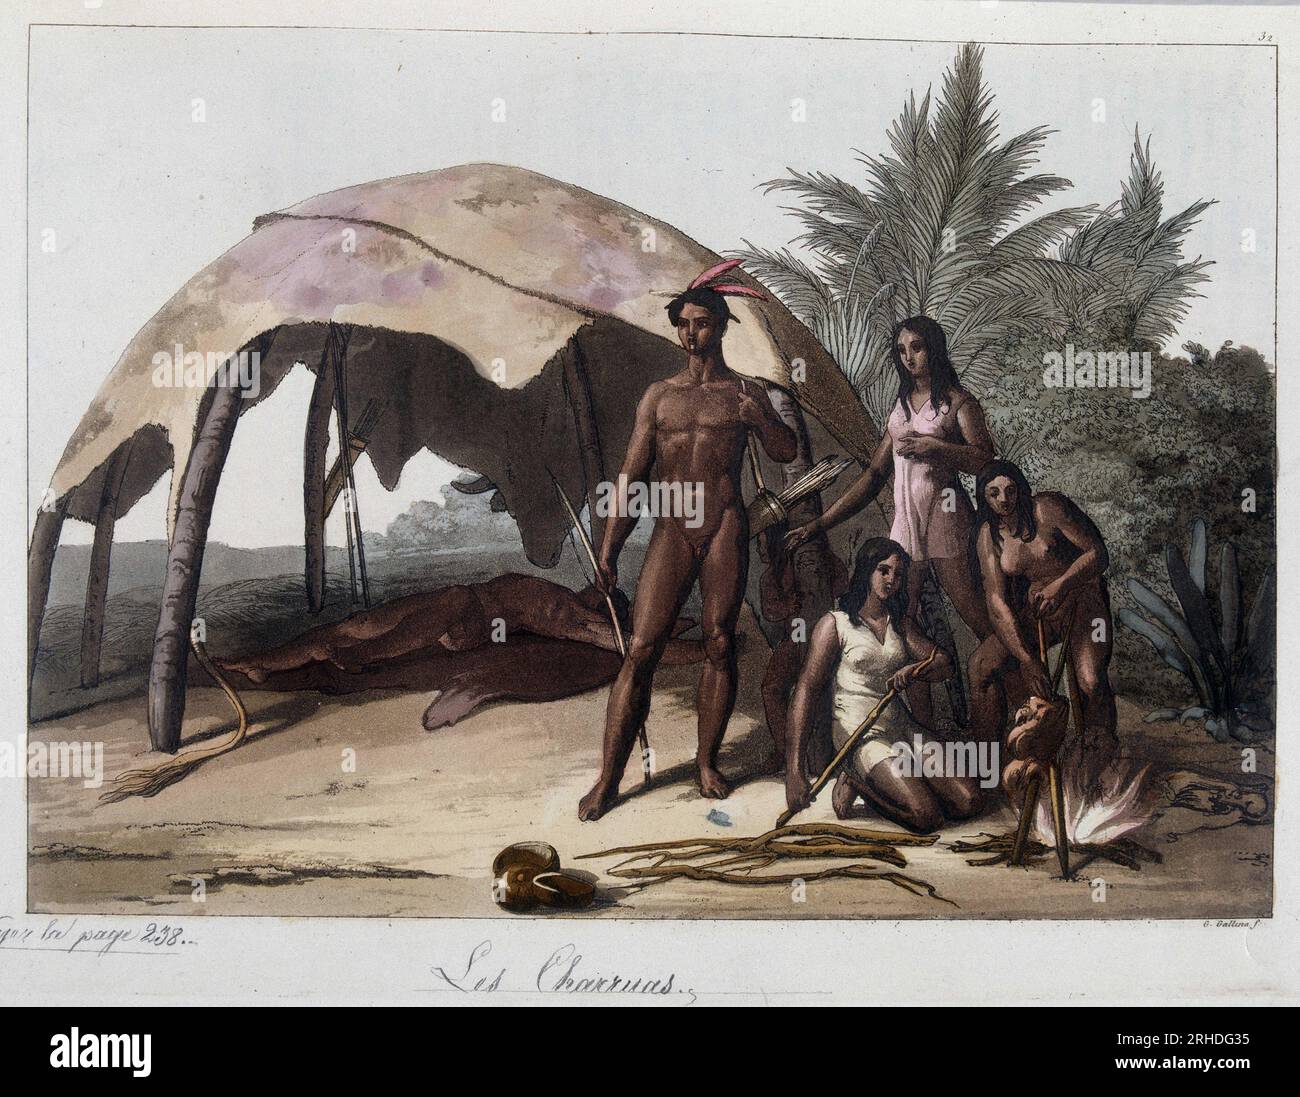 Repas chez les charruas, indiens du Paraguay. In 'Le Costume ancien et moderne' 1818-1820, par Ferrario. Stock Photo